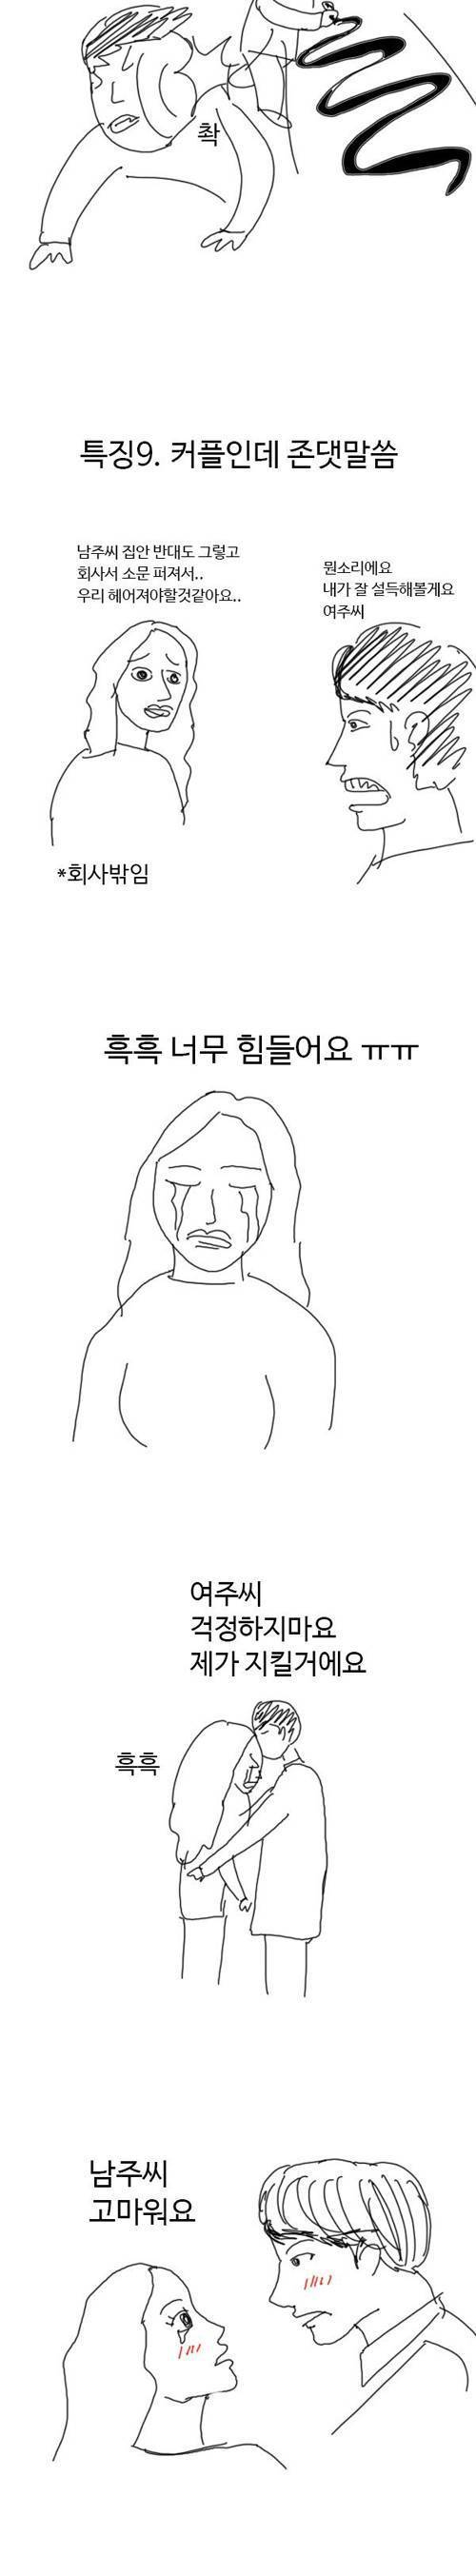 [스압]한국 드라마 특징.jpg